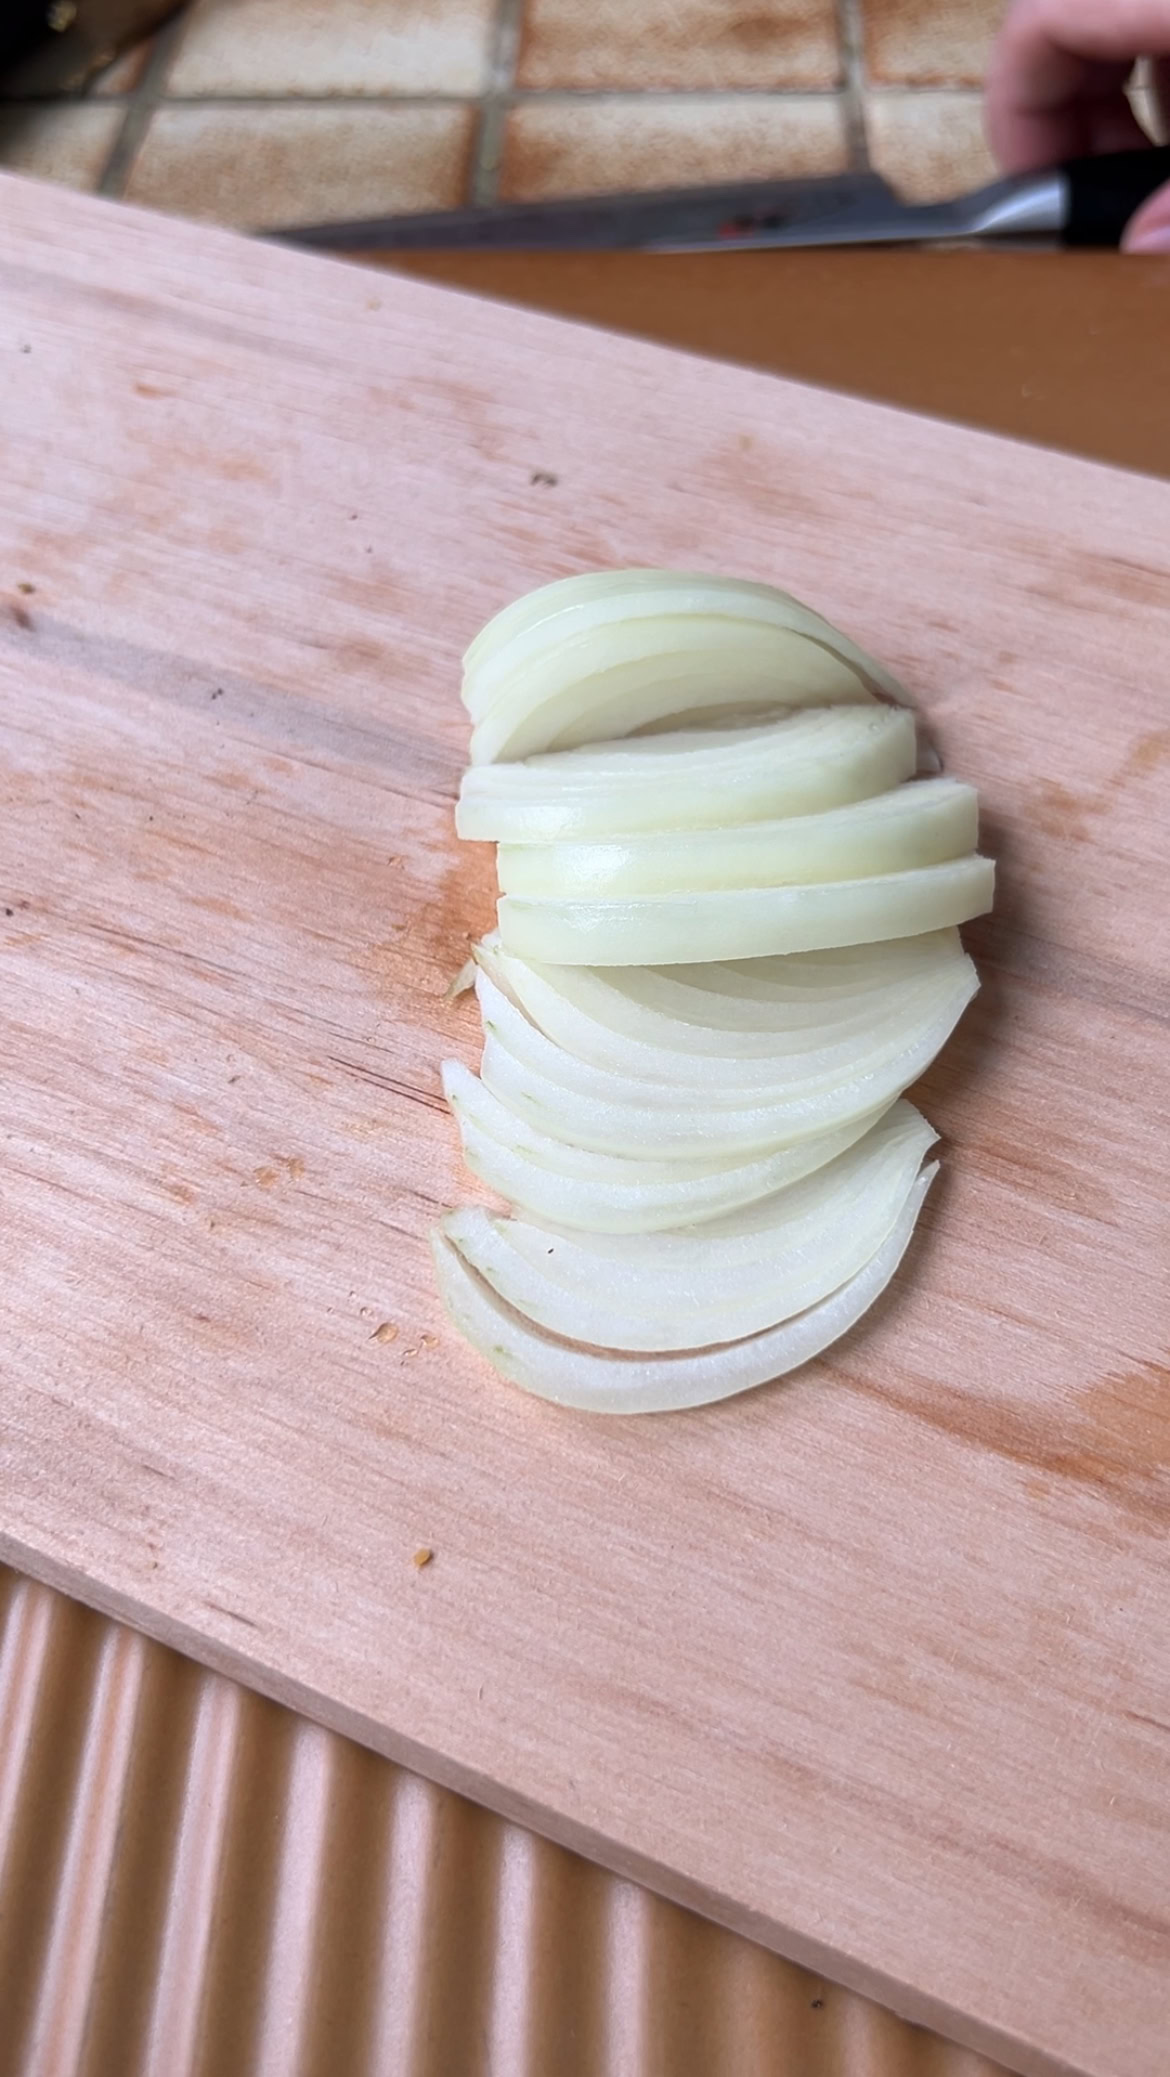 Oignon coupé en lamelles sur une planche en bois.